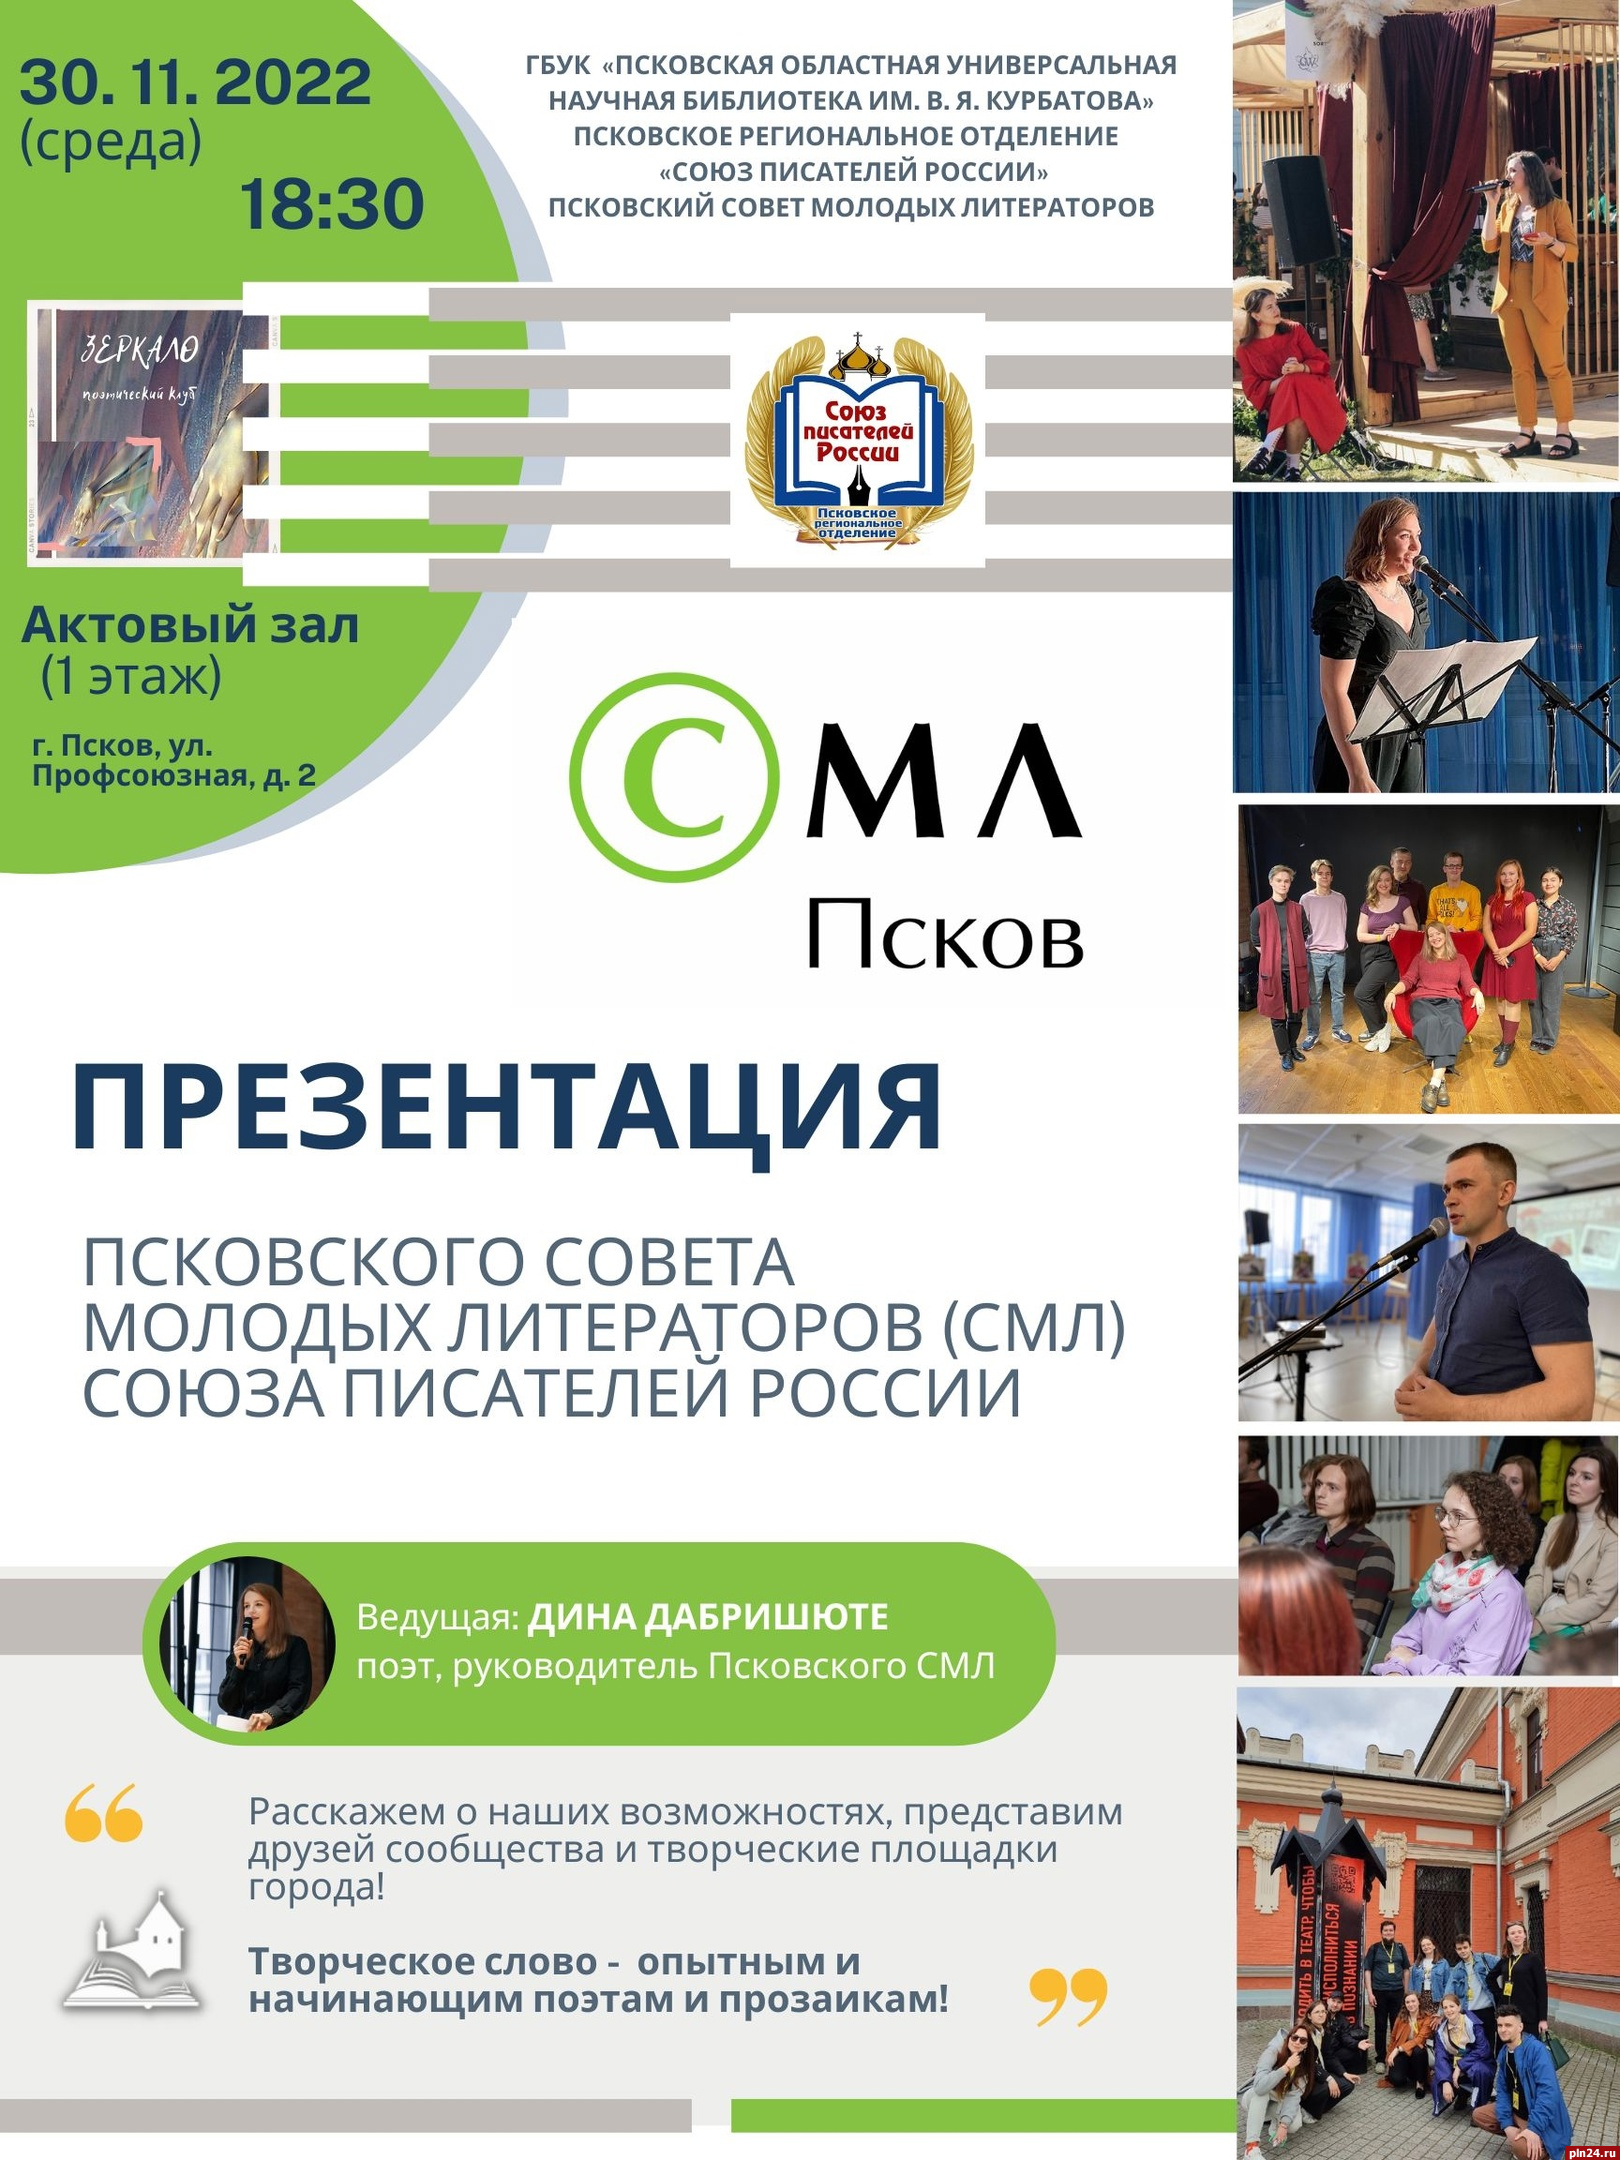 Презентация Псковского Совета молодых литераторов пройдет в Пскове